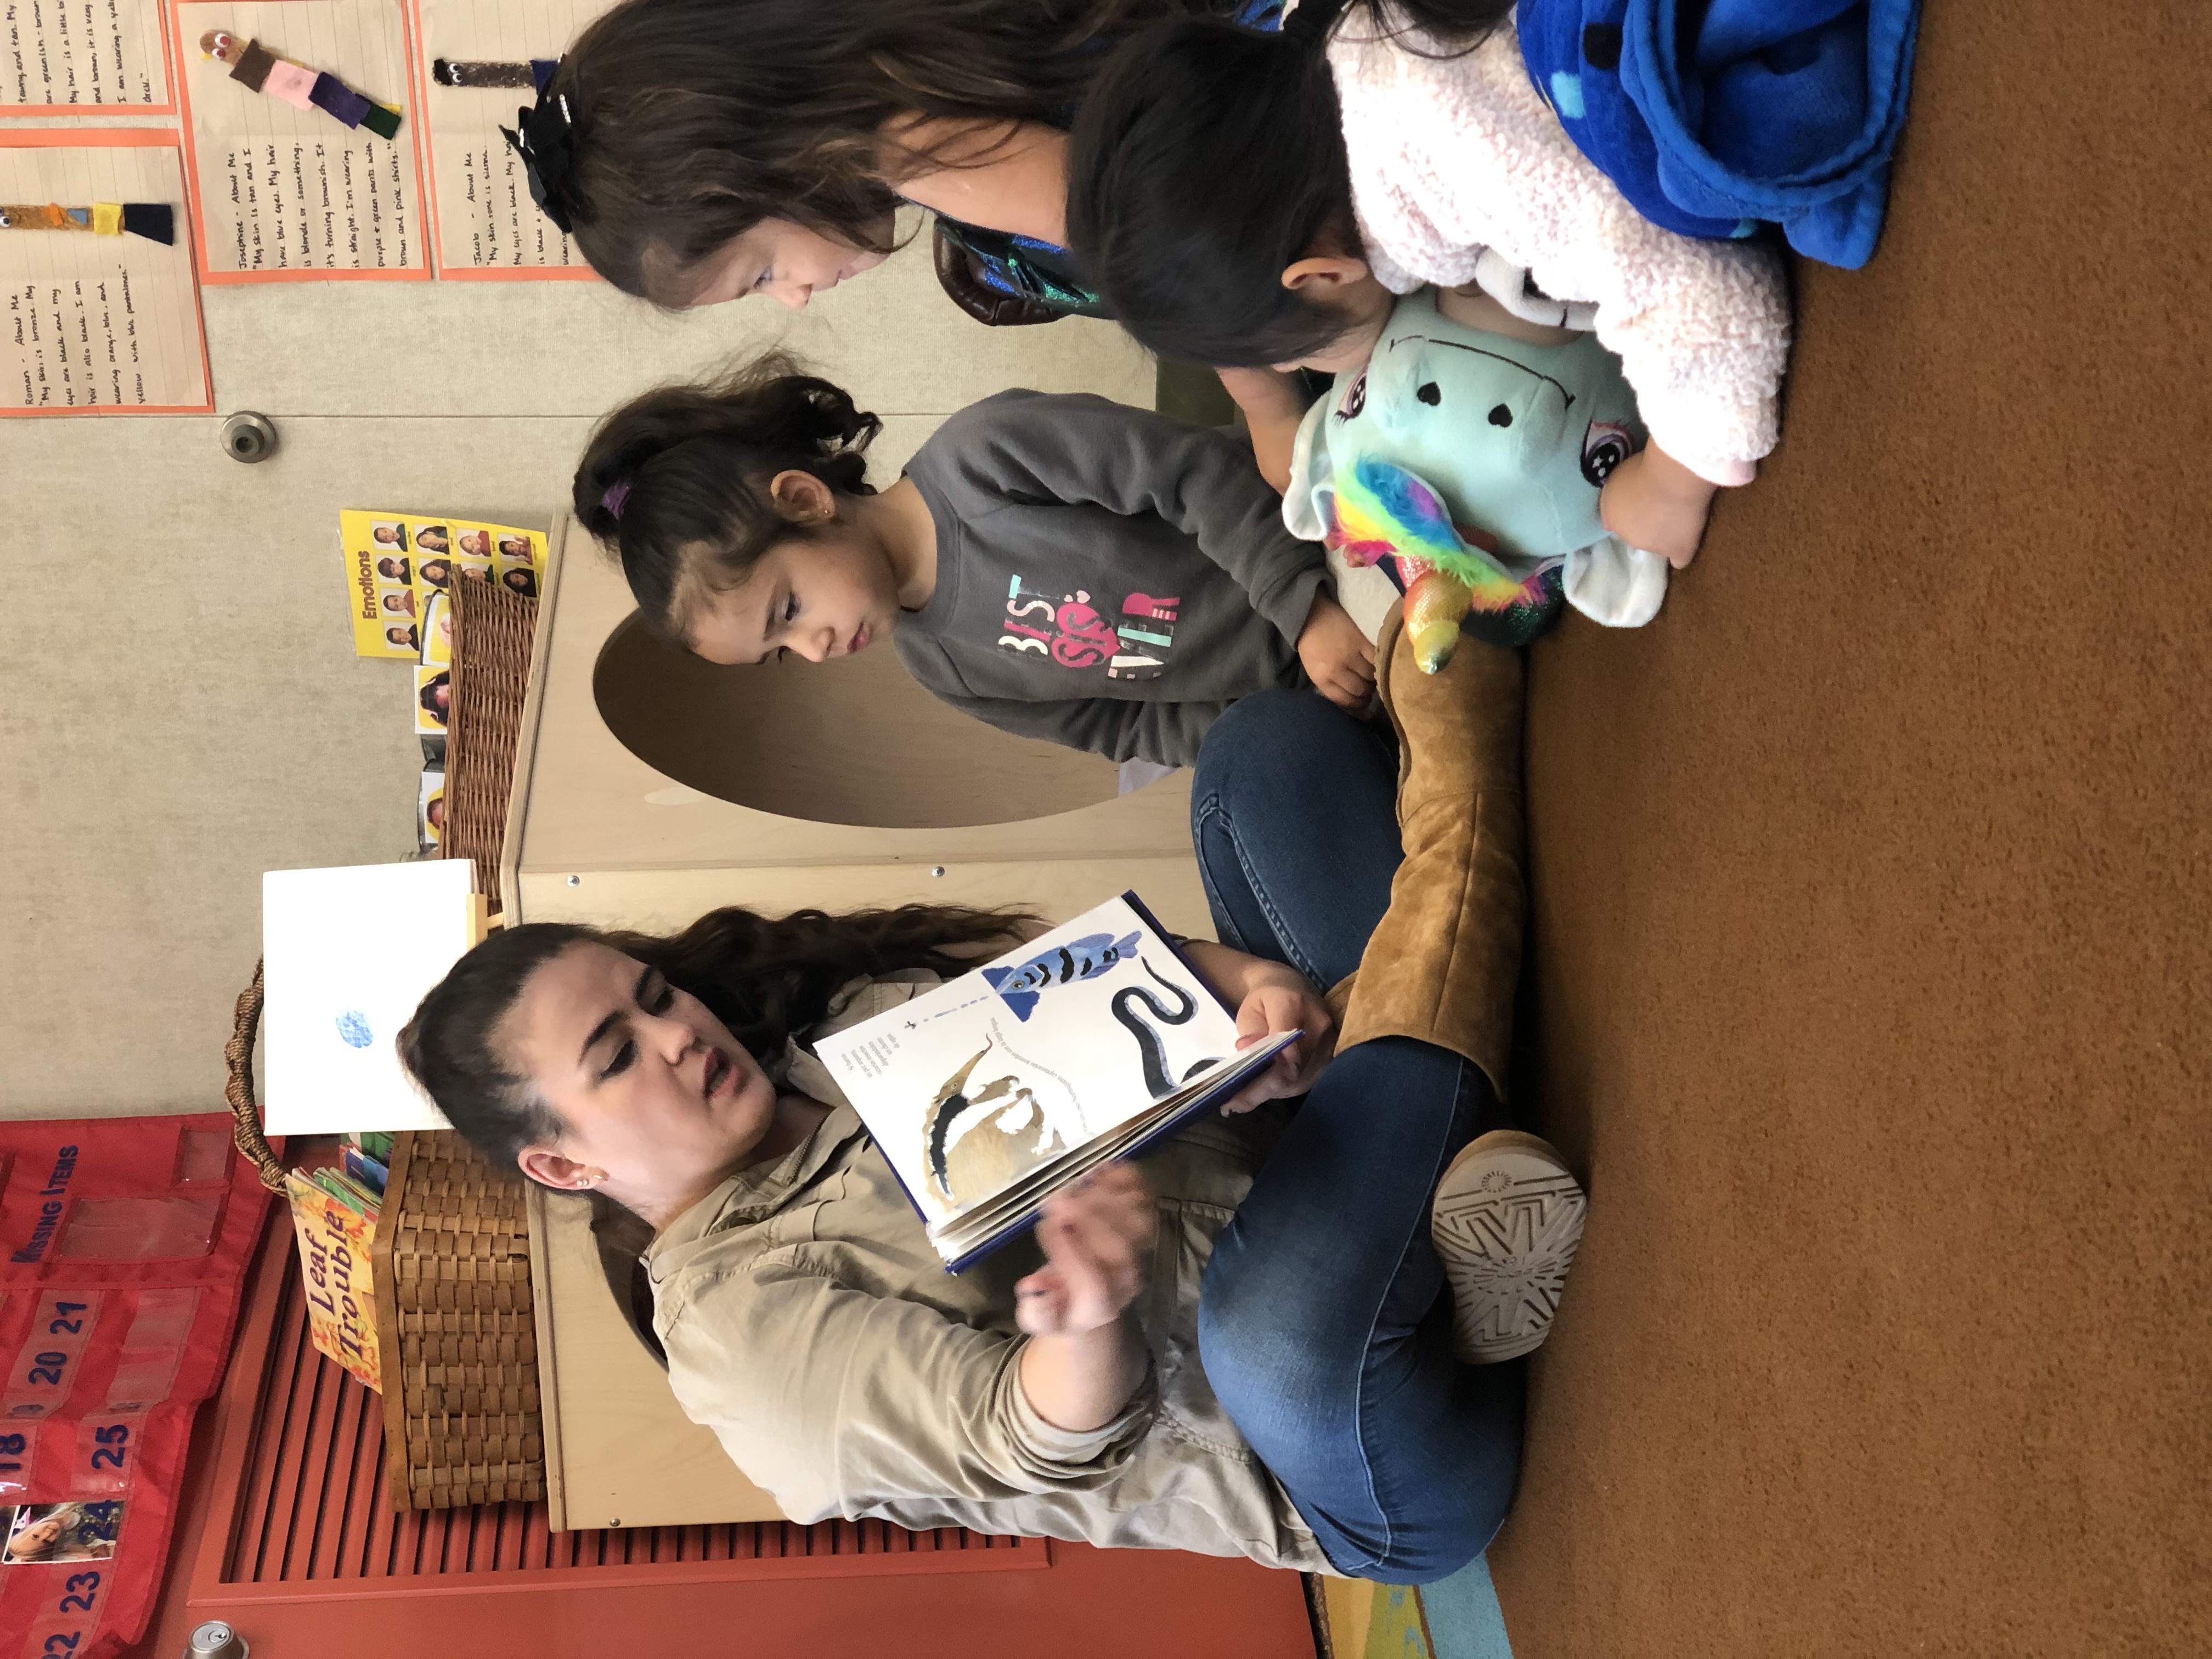 Teacher reading book to children